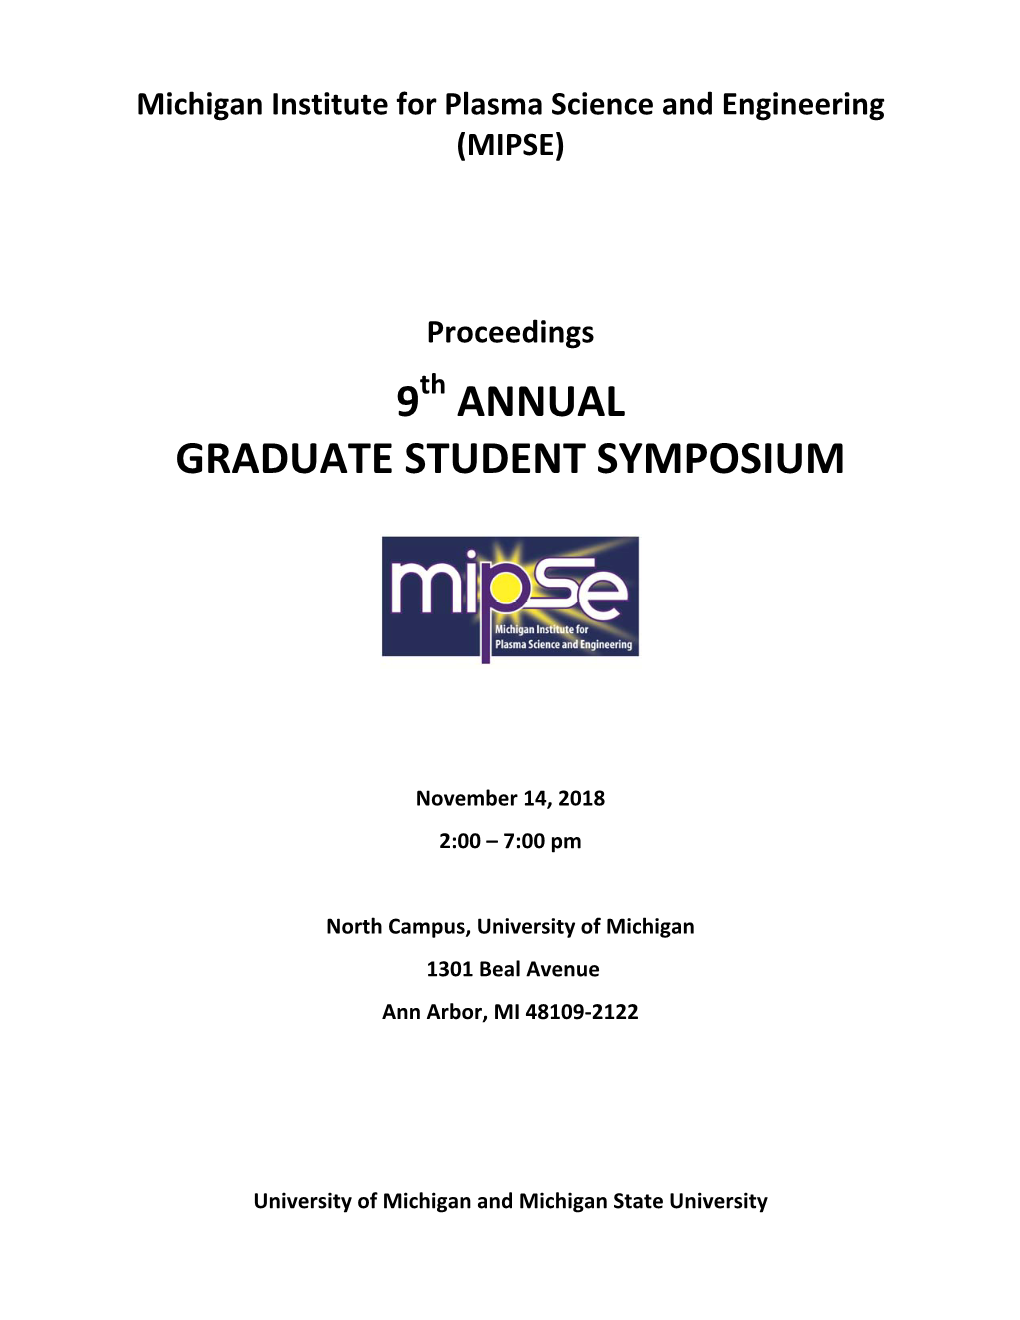 9 Annual Graduate Student Symposium